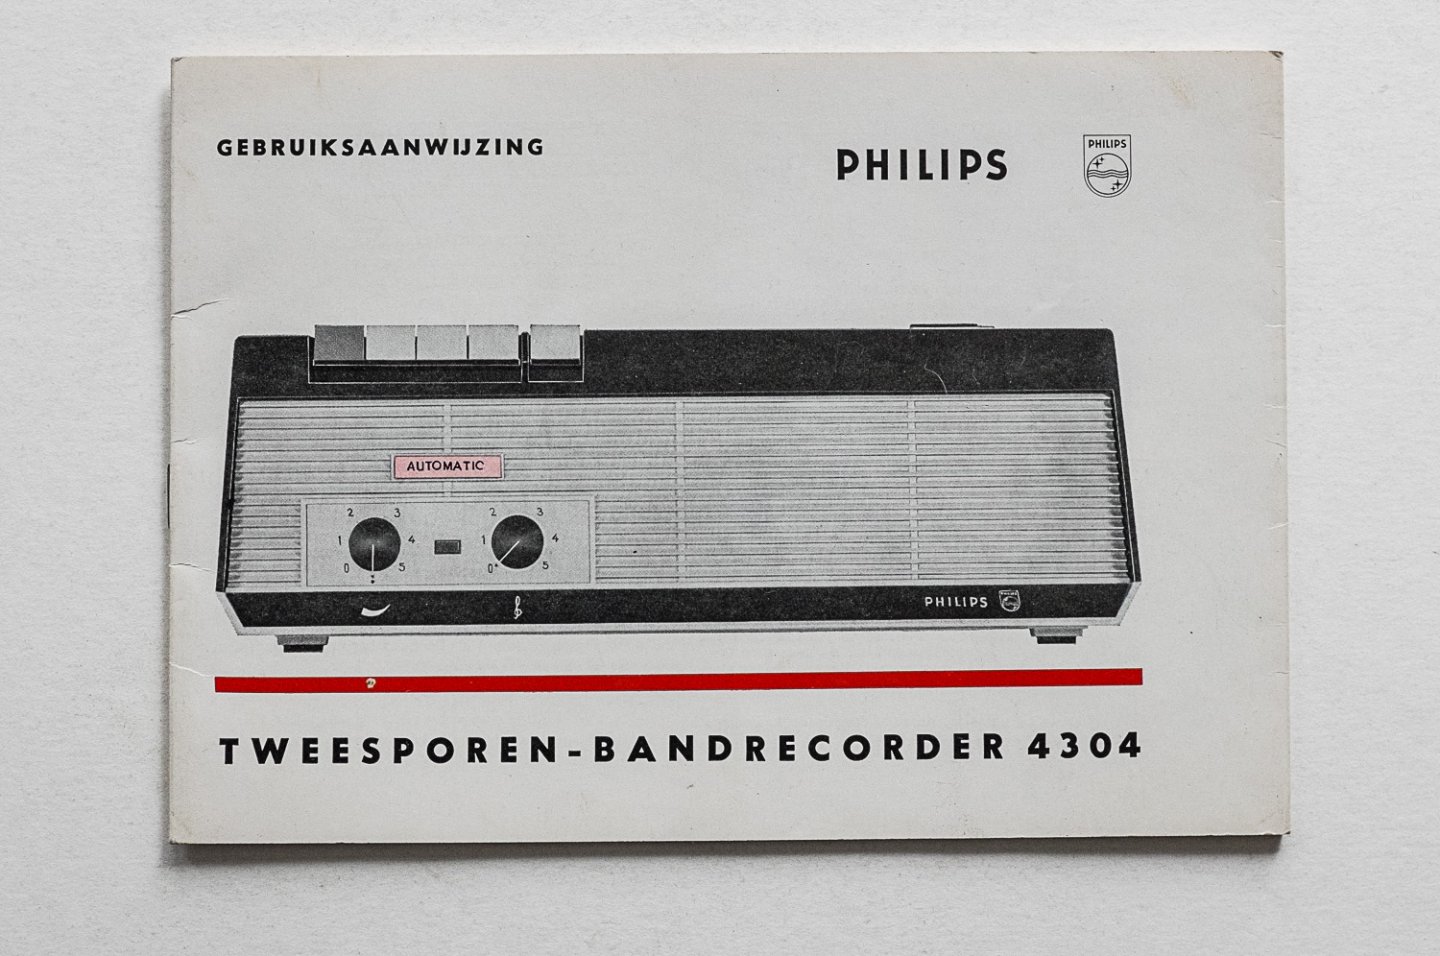 Philips Gloeilampenfabrieken Nederland n.v., Eindhoven - Philips  Tweesporen bandrecorder 4304